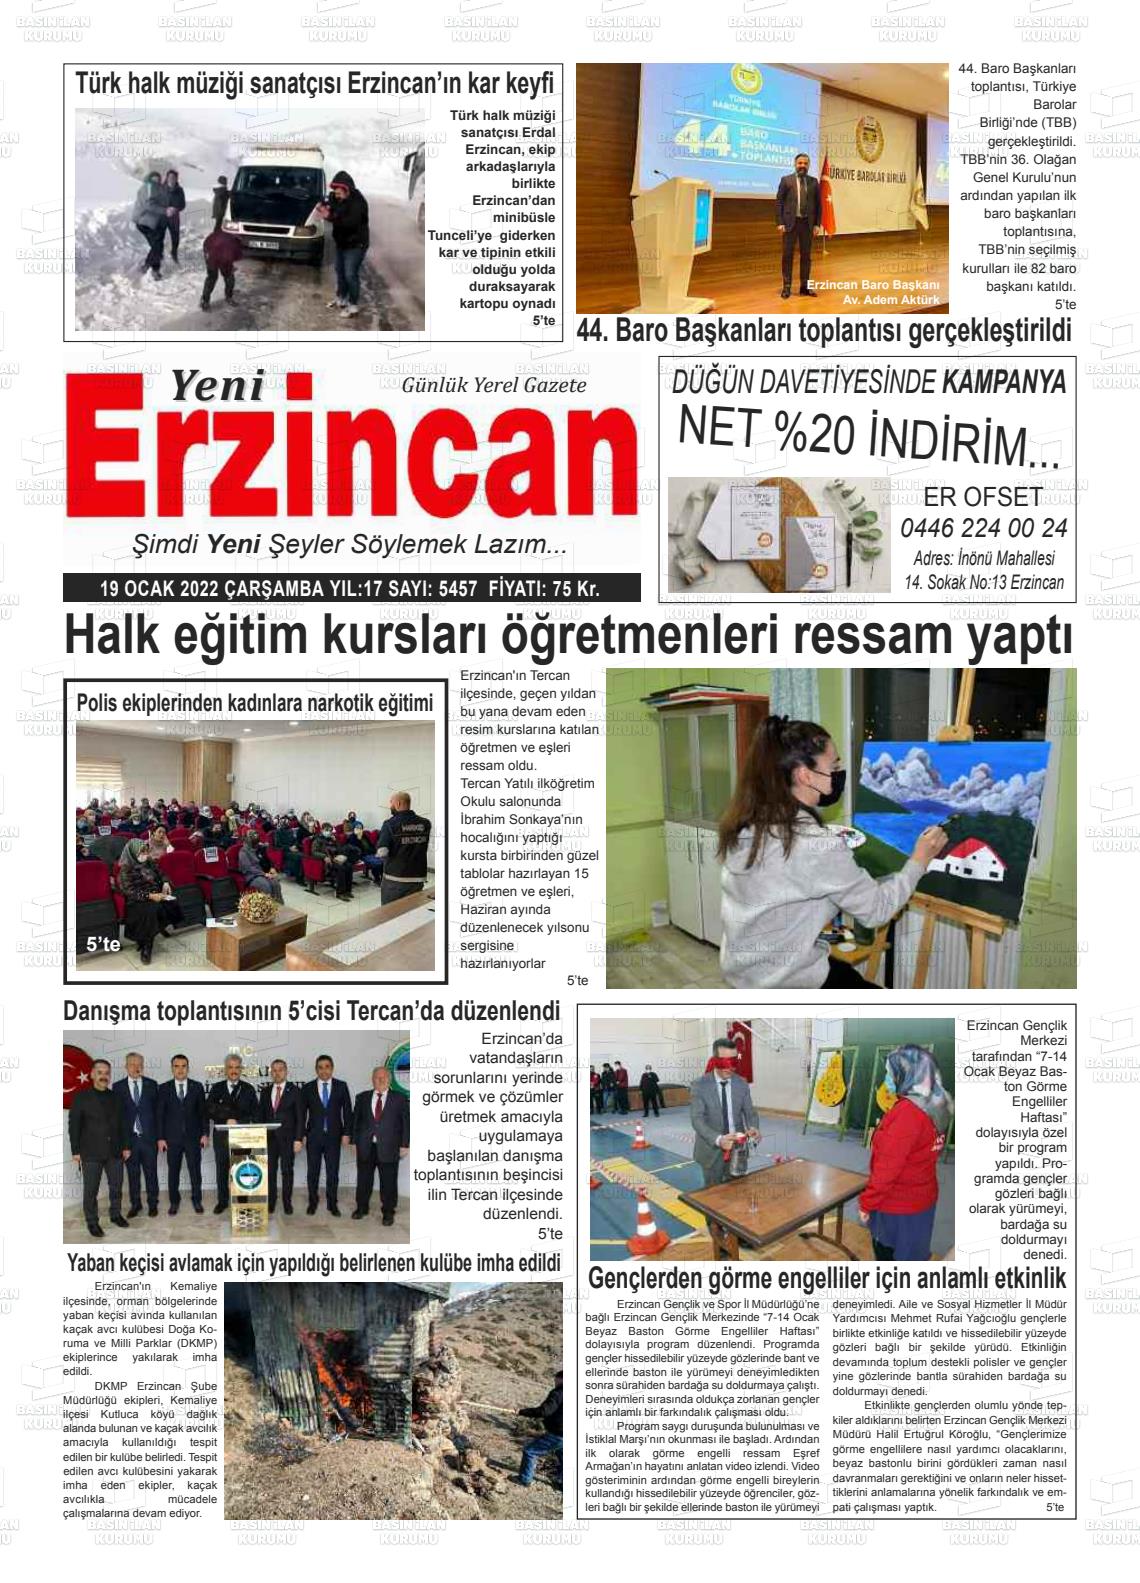 19 Ocak 2022 Yeni Erzincan Gazete Manşeti